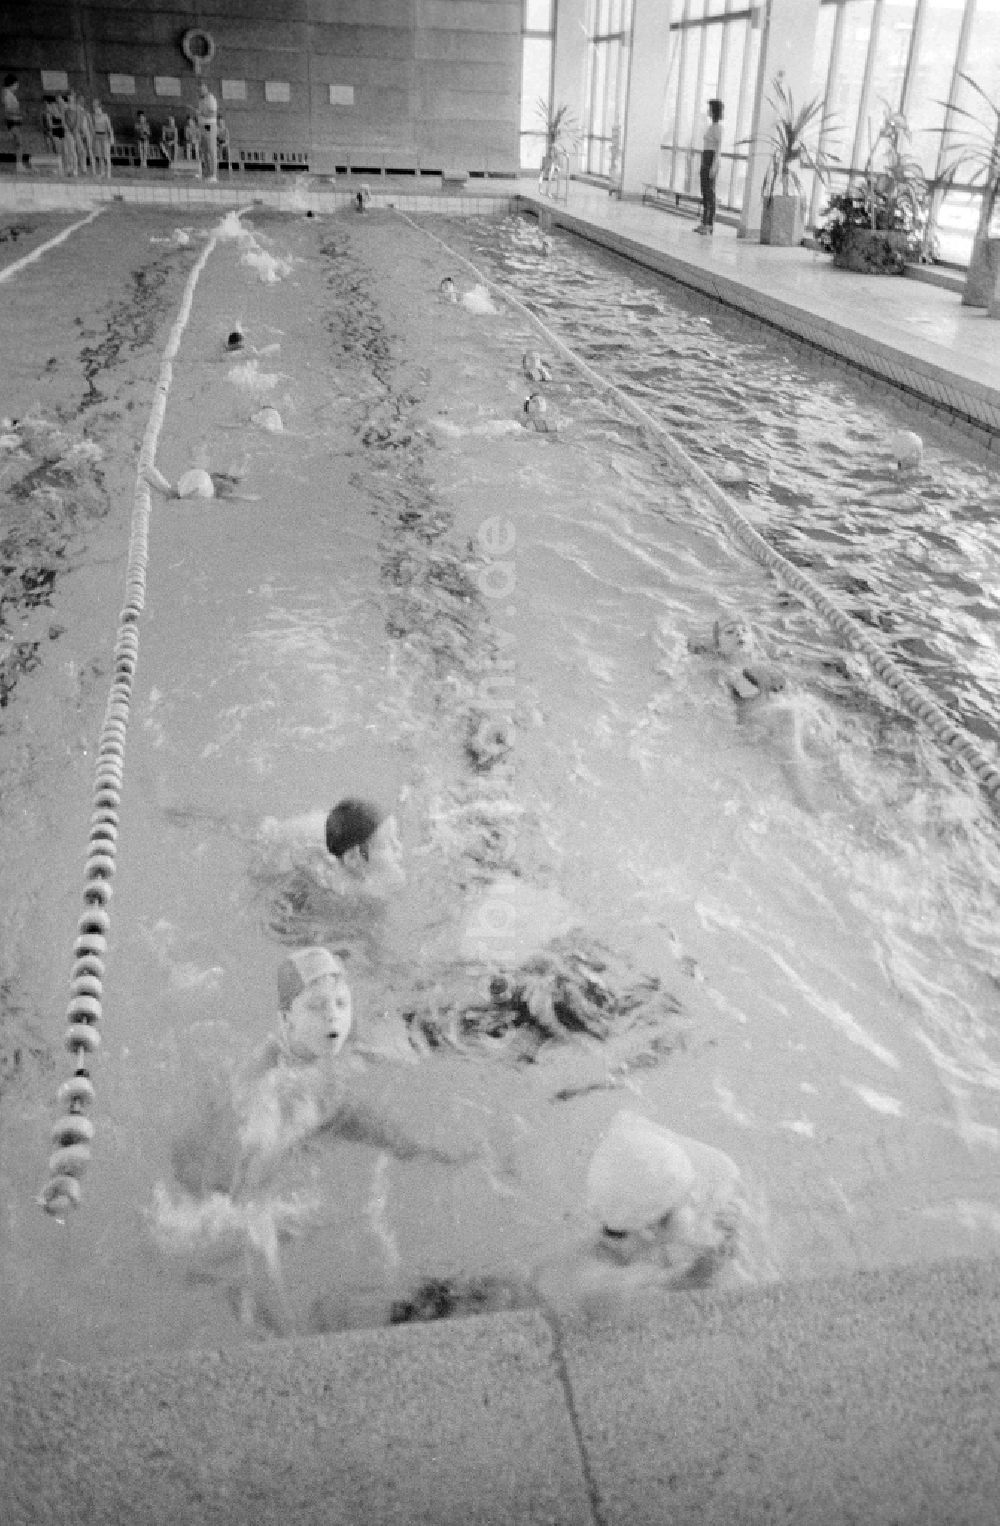 Berlin: Schwimmunterricht der Klassenstufen 2 und 3 in einer Schwimmhalle in Berlin, der ehemaligen Hauptstadt der DDR, Deutsche Demokratische Republik